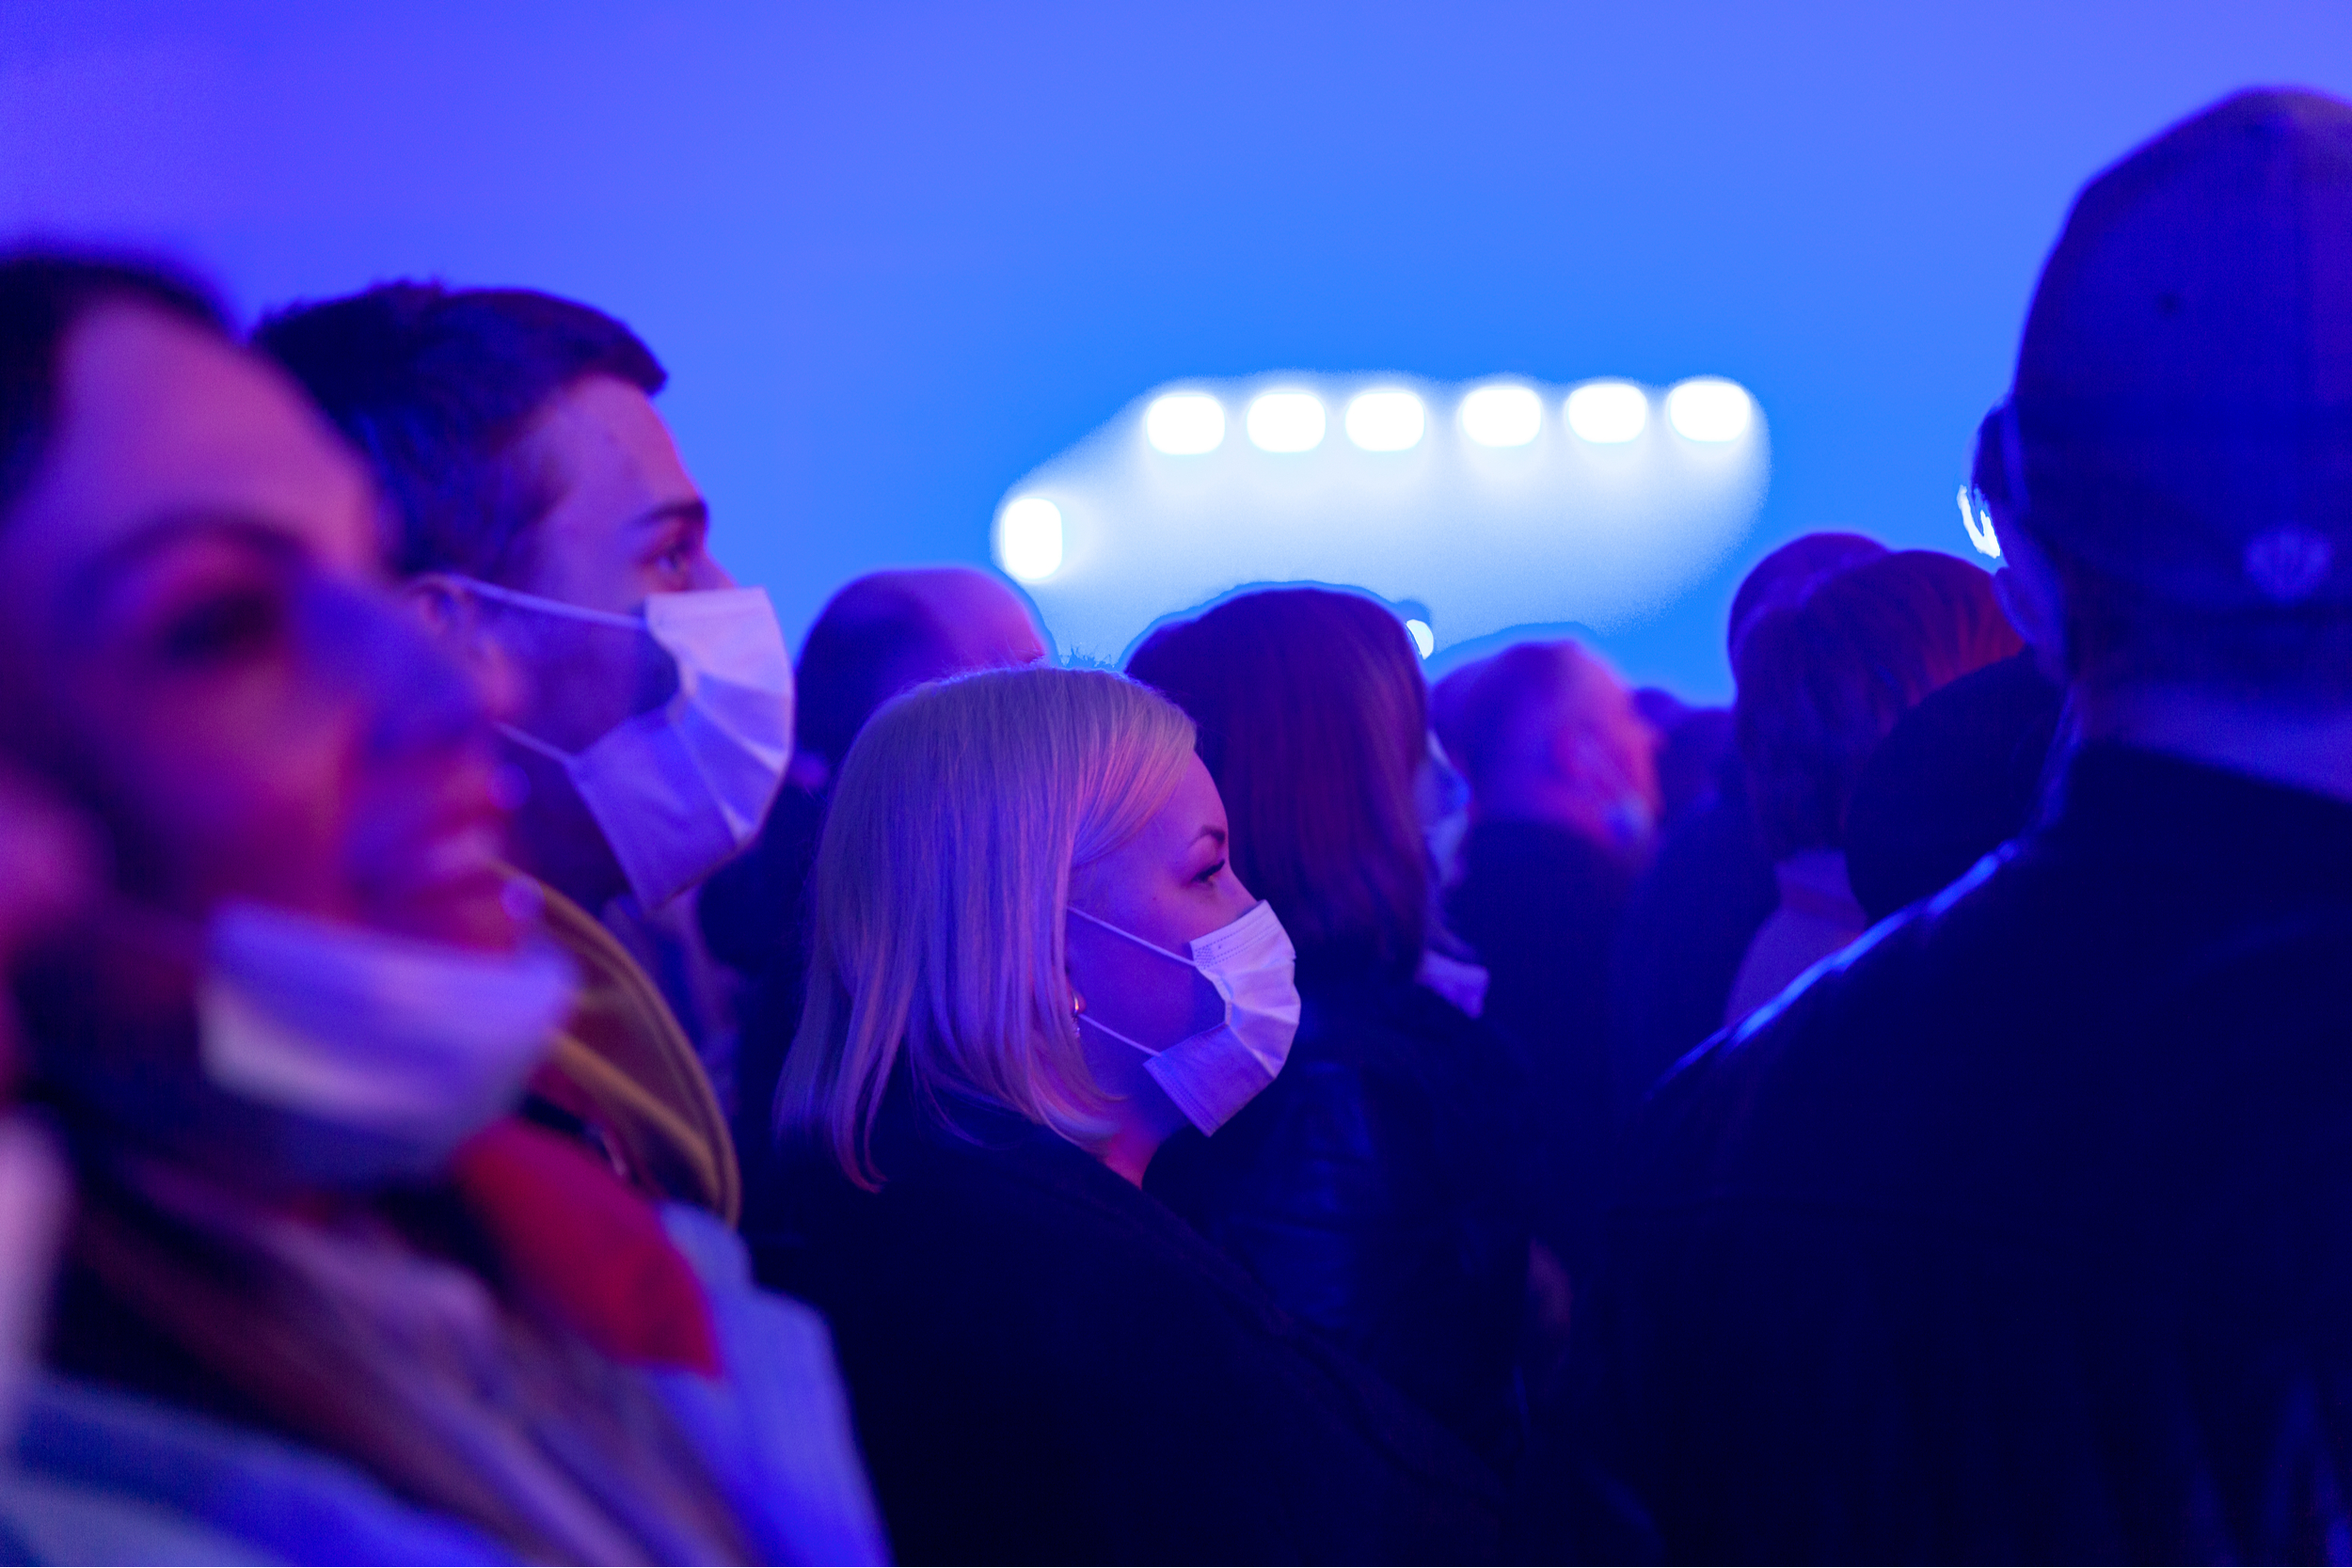 koncert w czasie pandemii, przedłużenie obostrzeń covidowych, fot. Shutterstock